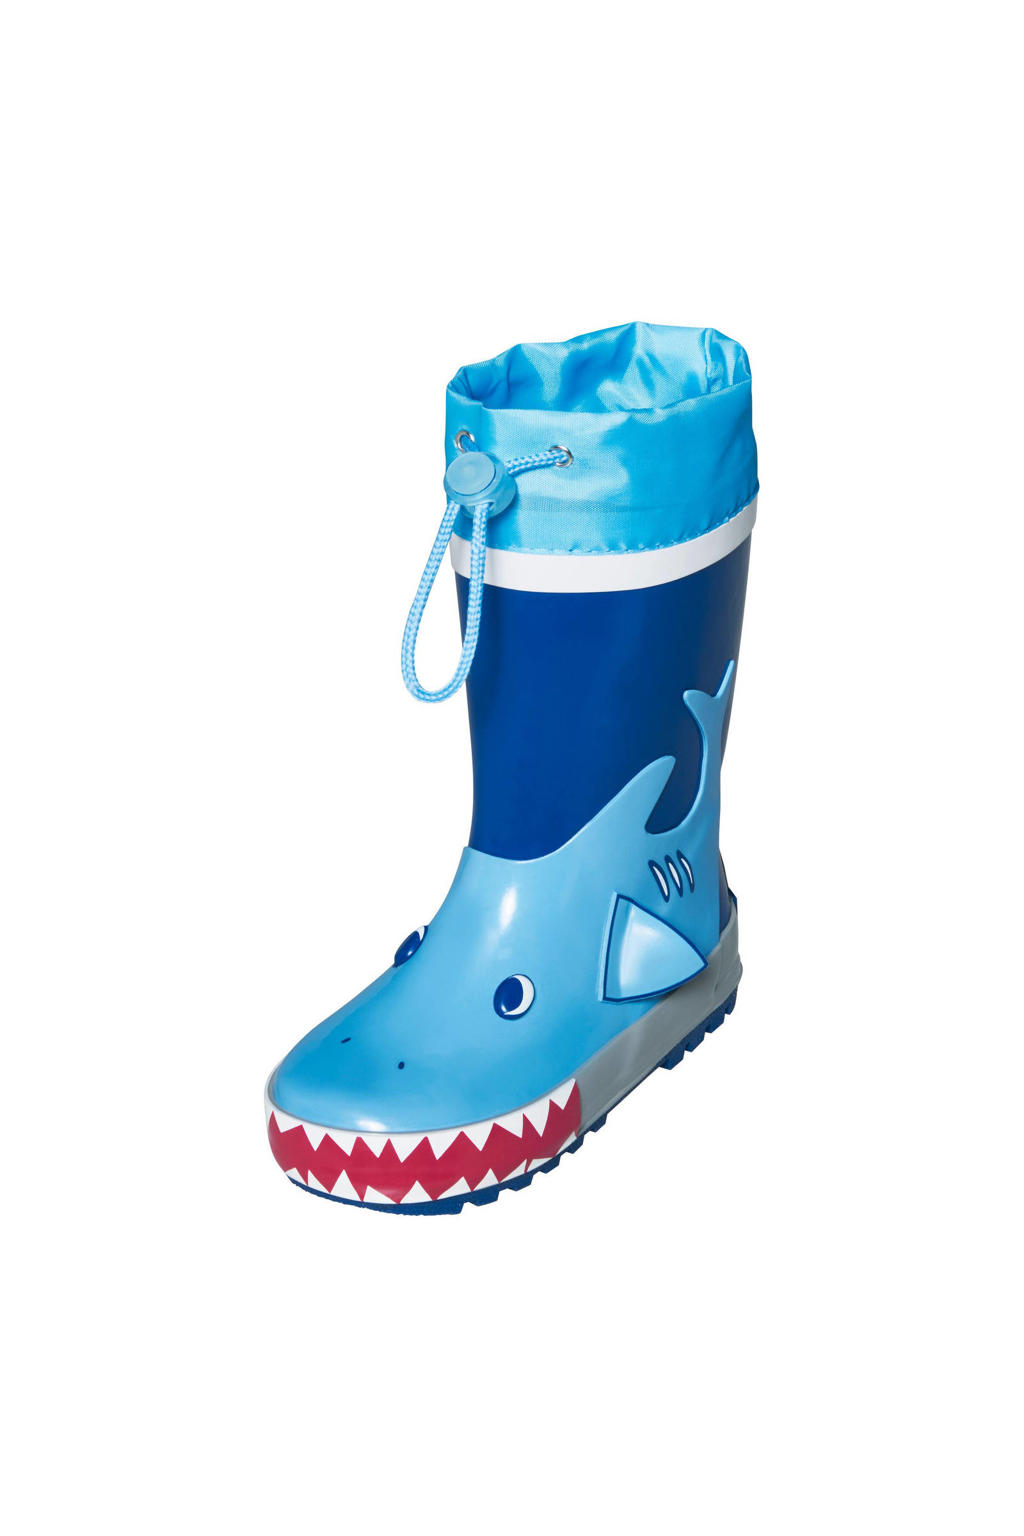 Playshoes Shark  gevoerde regenlaarzen blauw